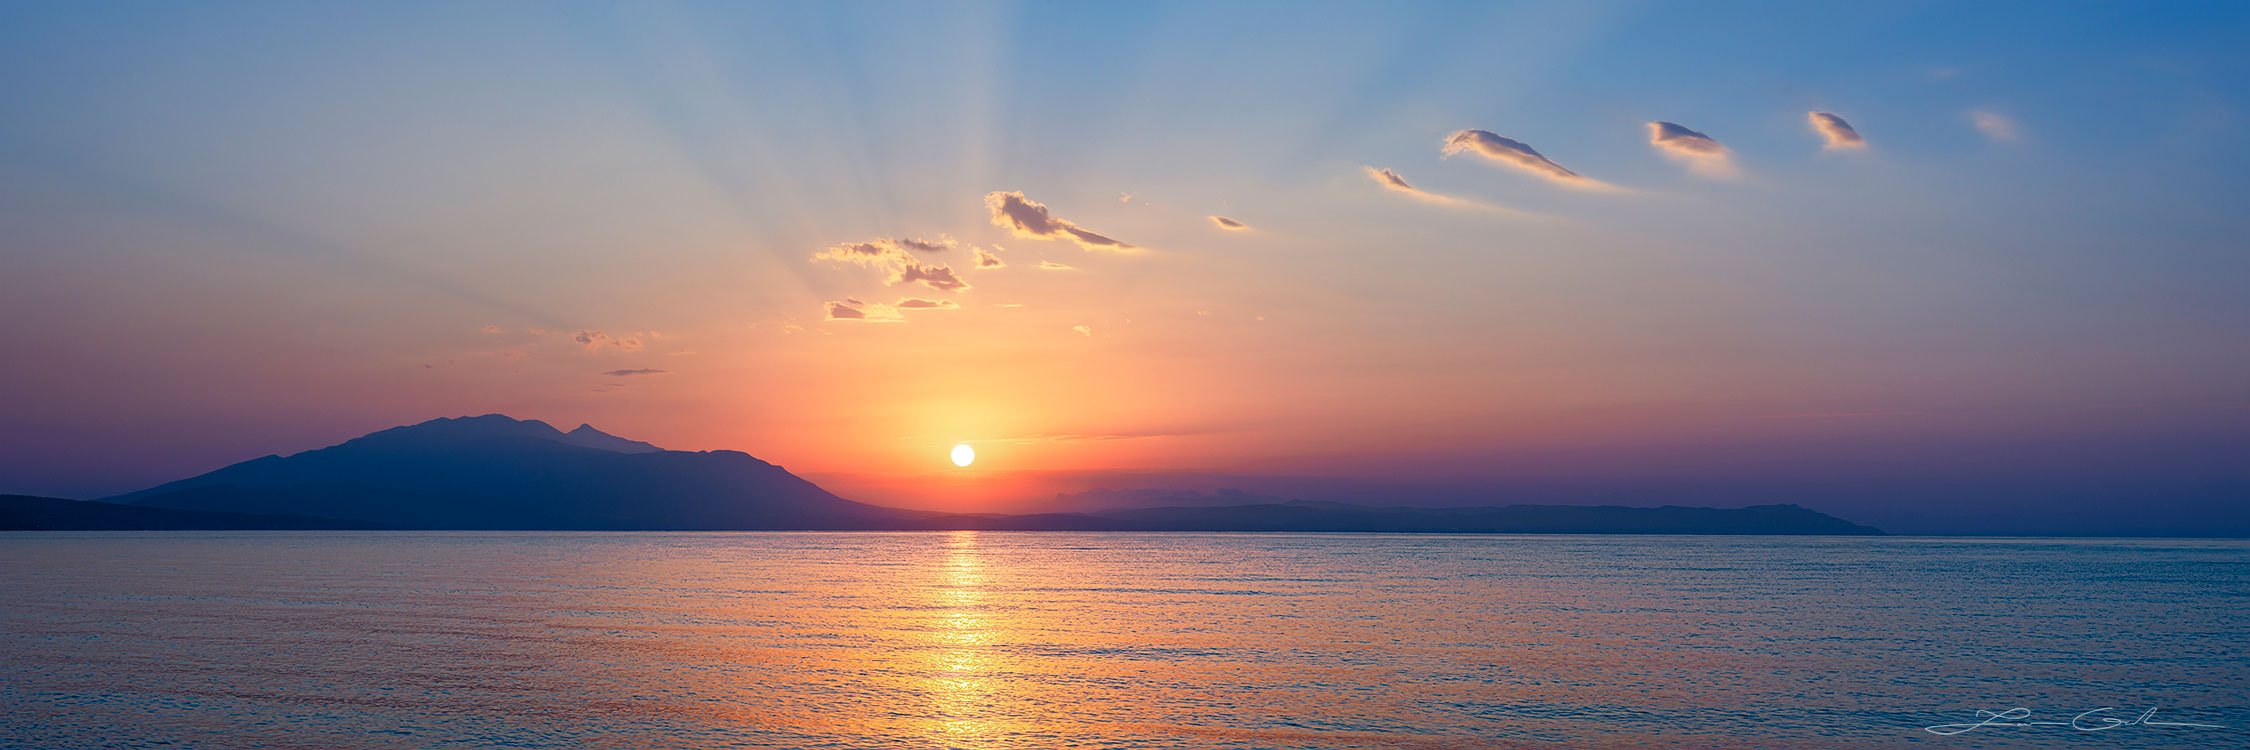 The sun rising above a mountain horizon and a sea gulf, Greece